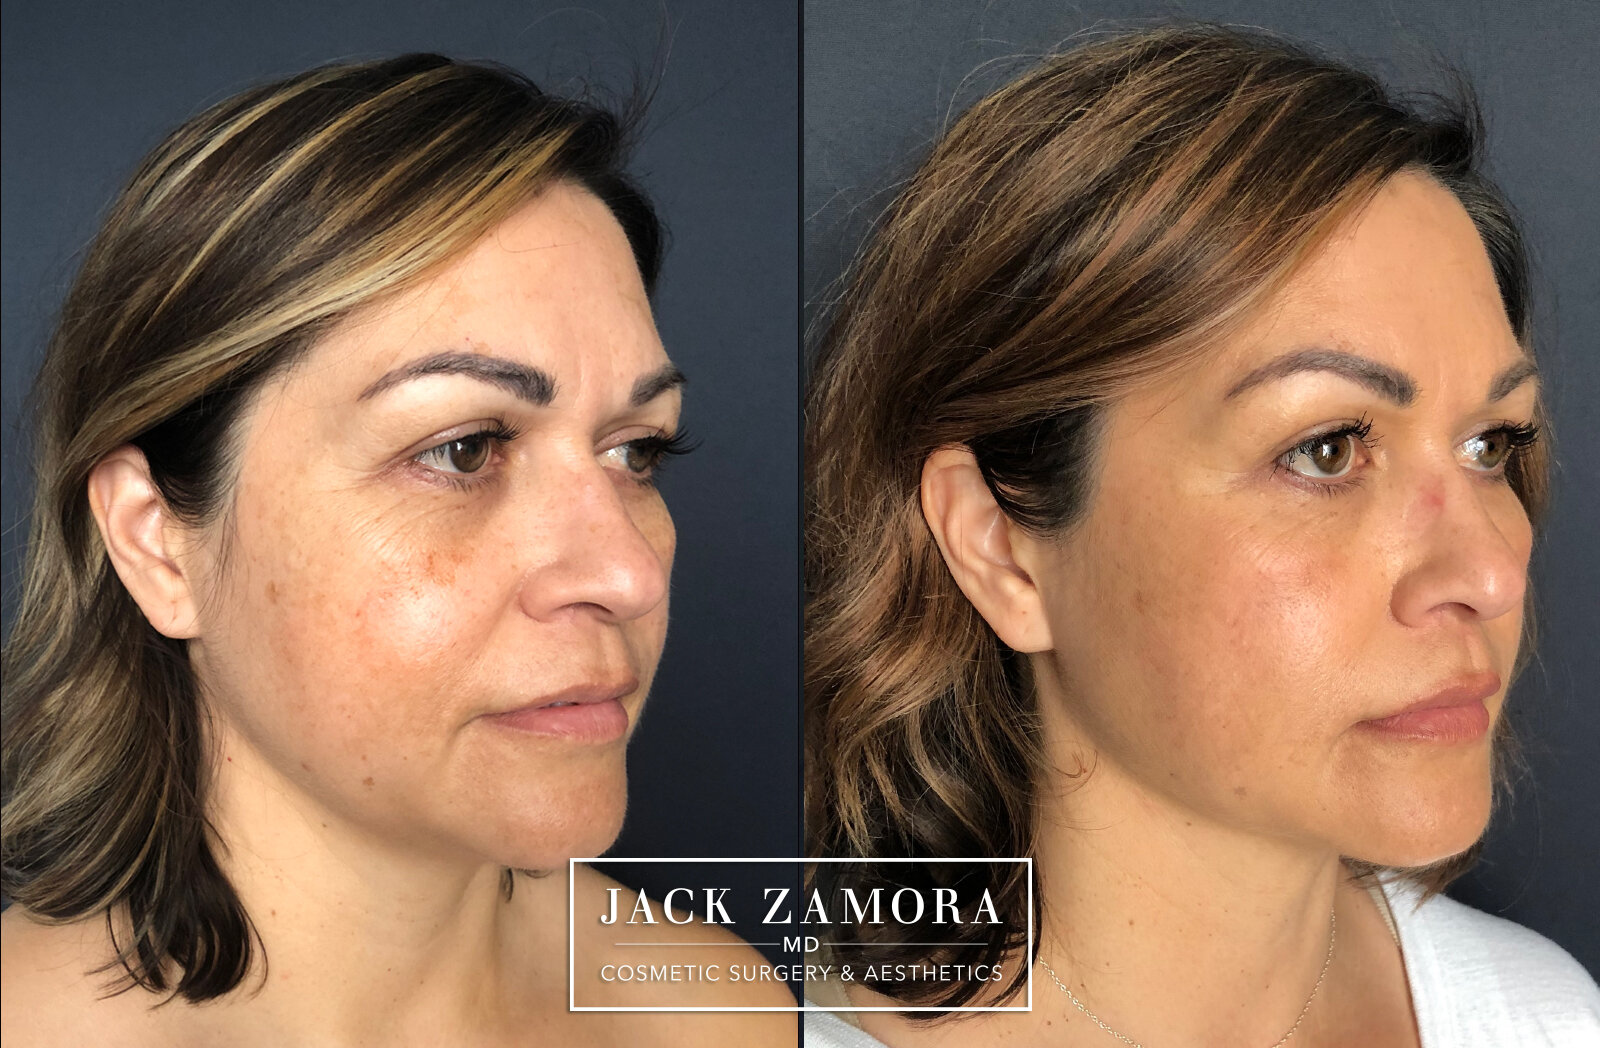 Facial Fat Transfer by Dr. Zamora